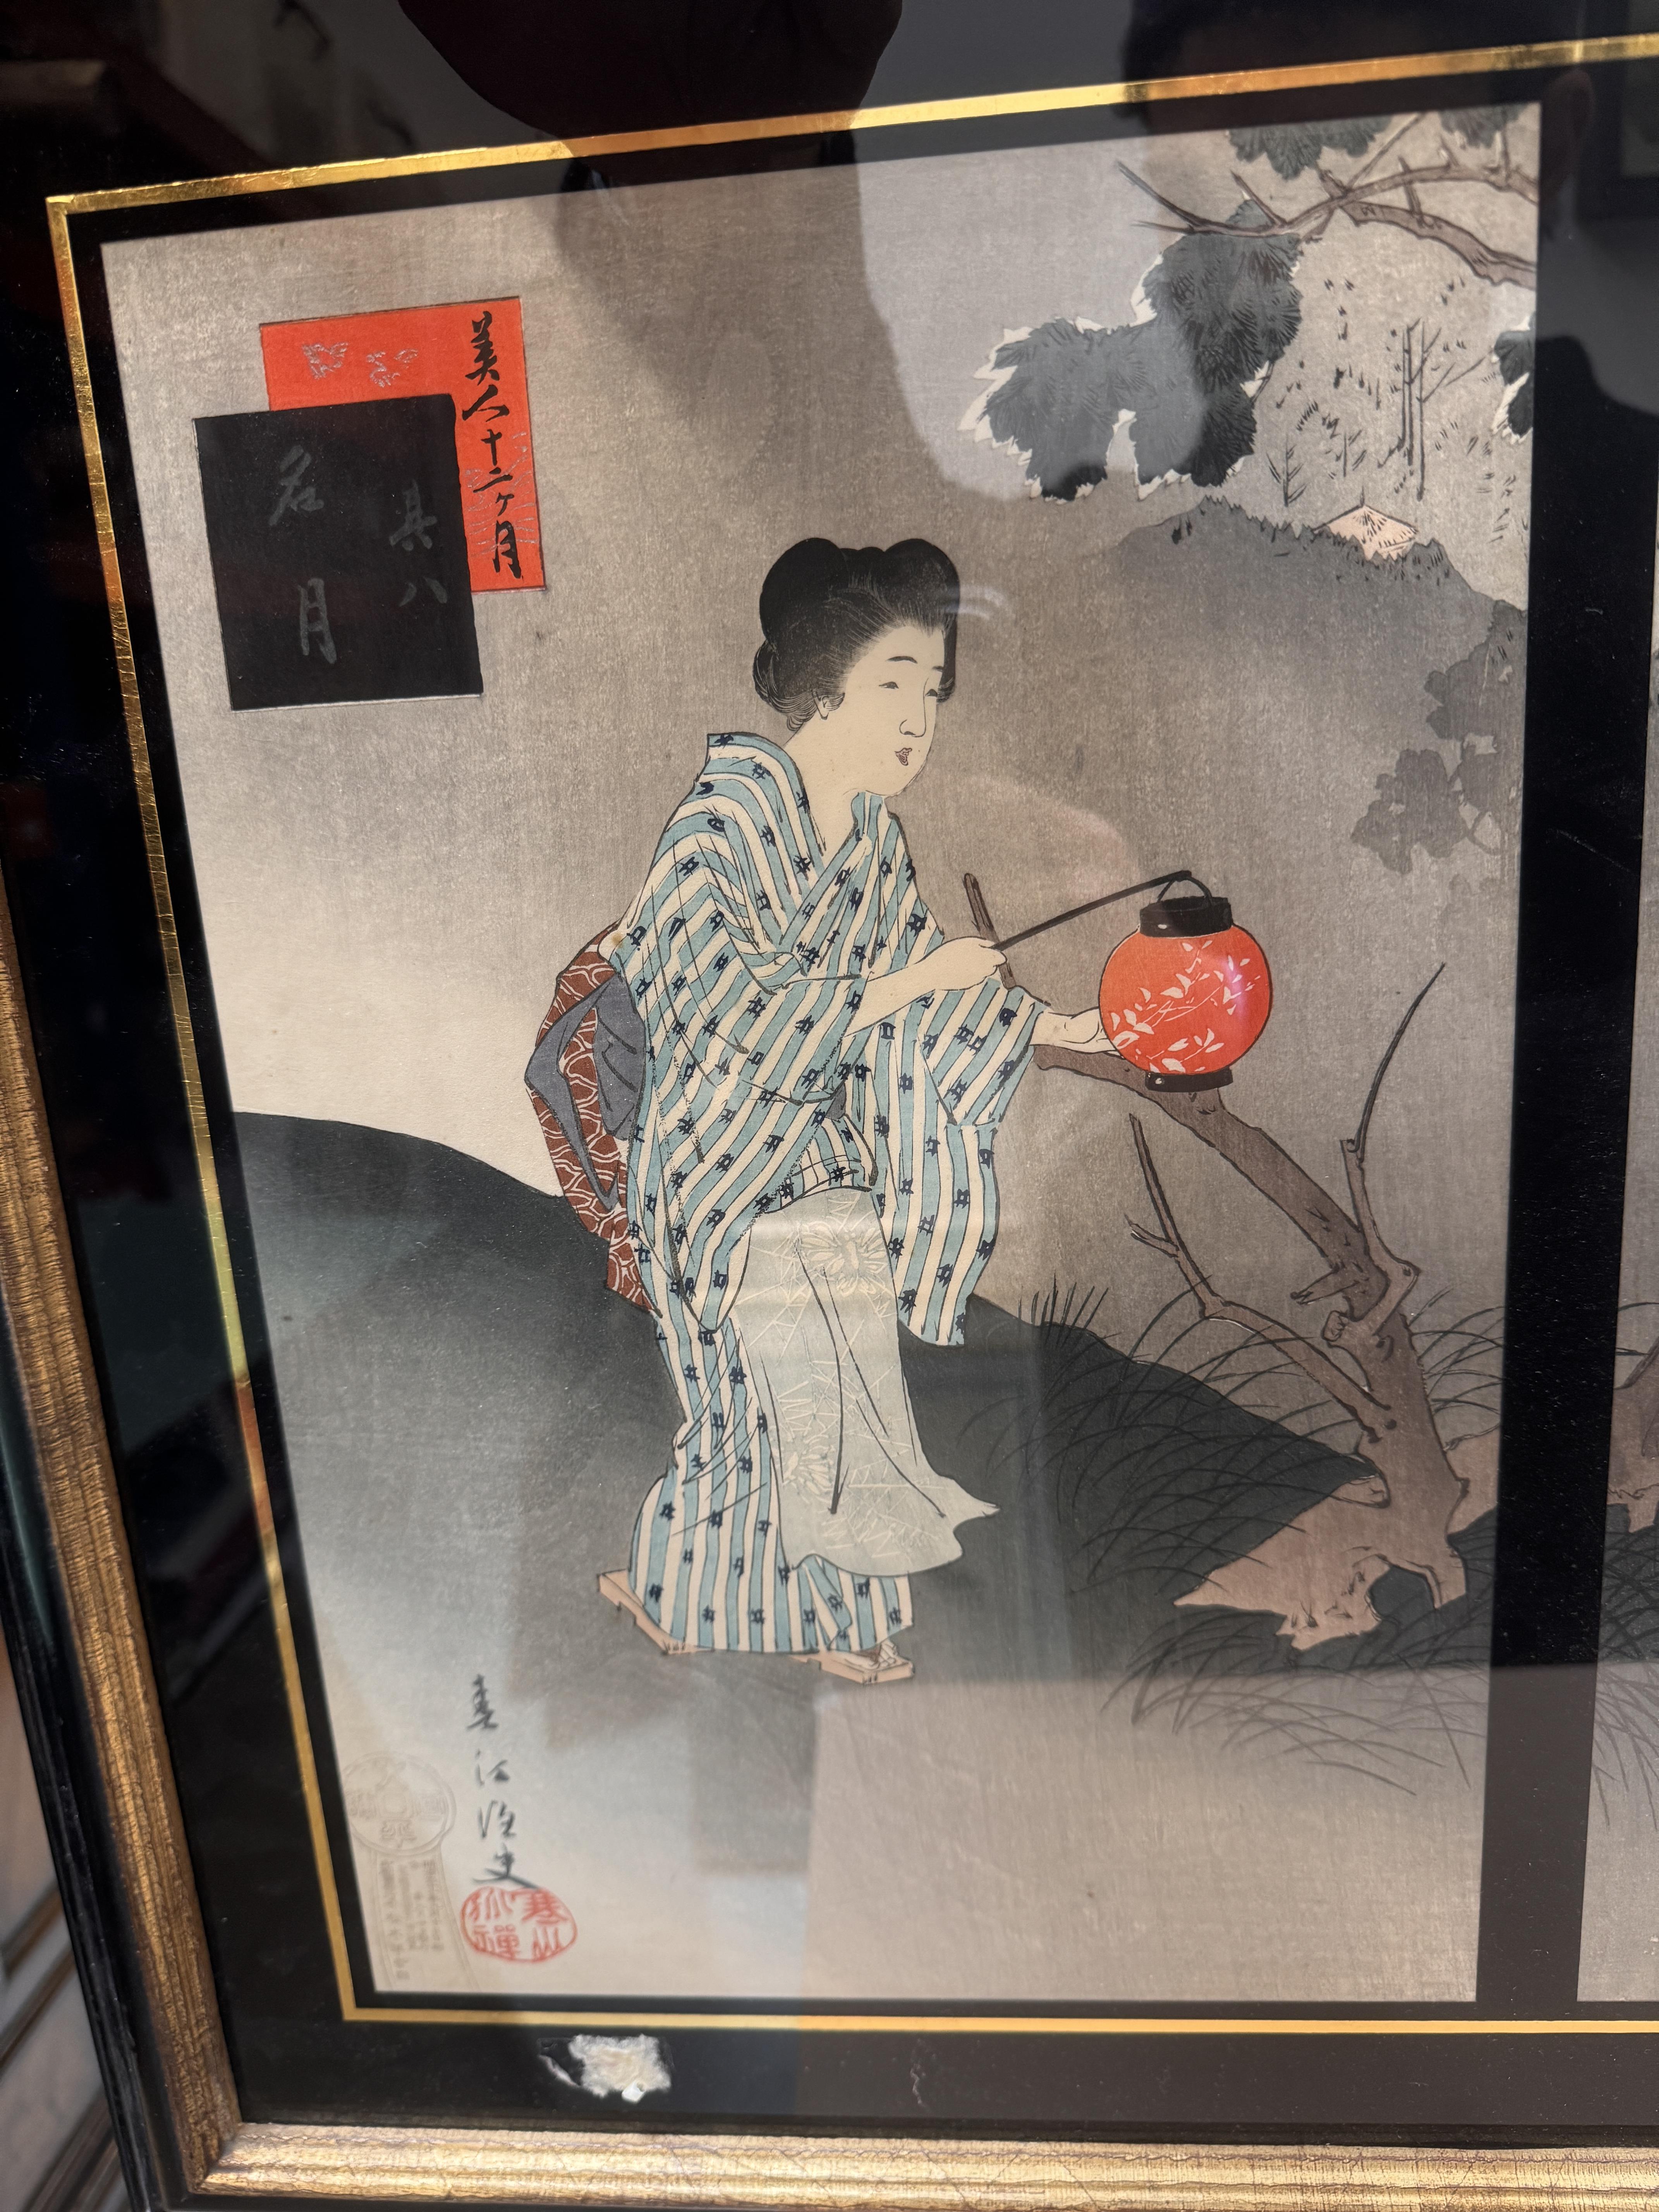 TSUKIOKA YOSHITOSHI (1797 – 1858), MIYAGAWA SHUNTEI (1873 – 1914) Two Japanese woodblock print tript - Image 8 of 23